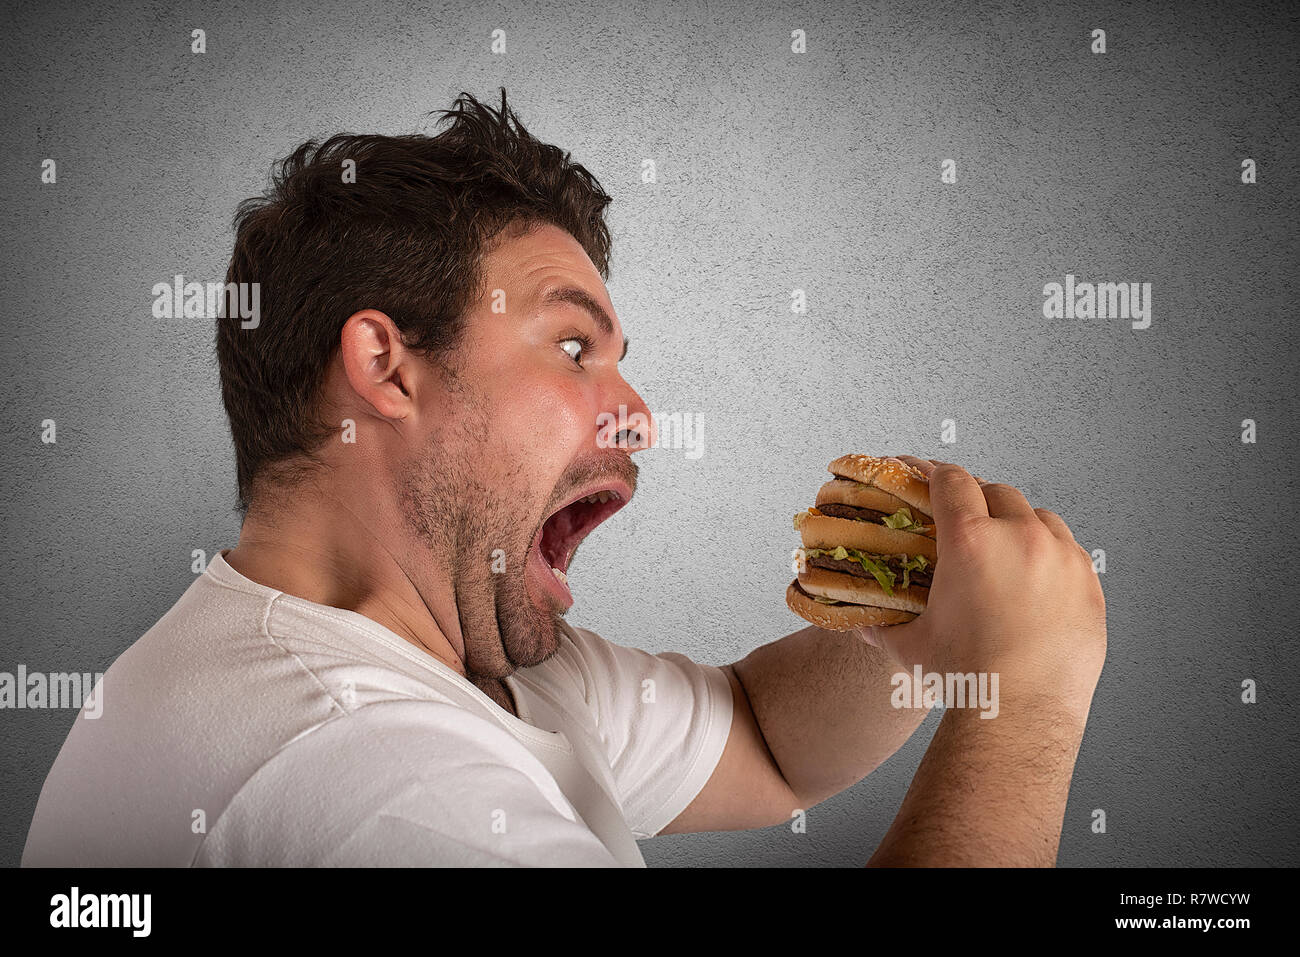 Unersättlich und hungrigen Mann essen ein Sandwich Stockfoto